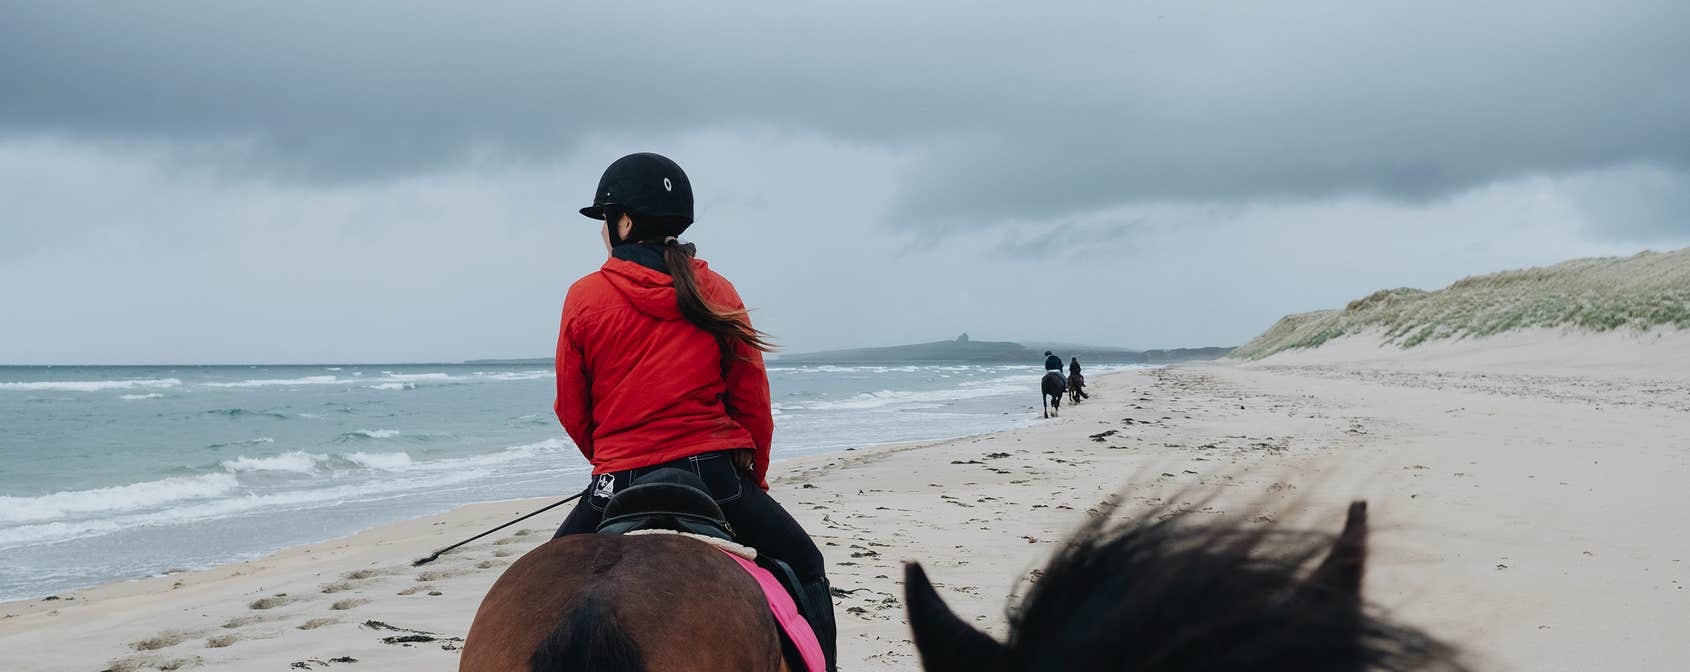 Girl horseriding on the beach